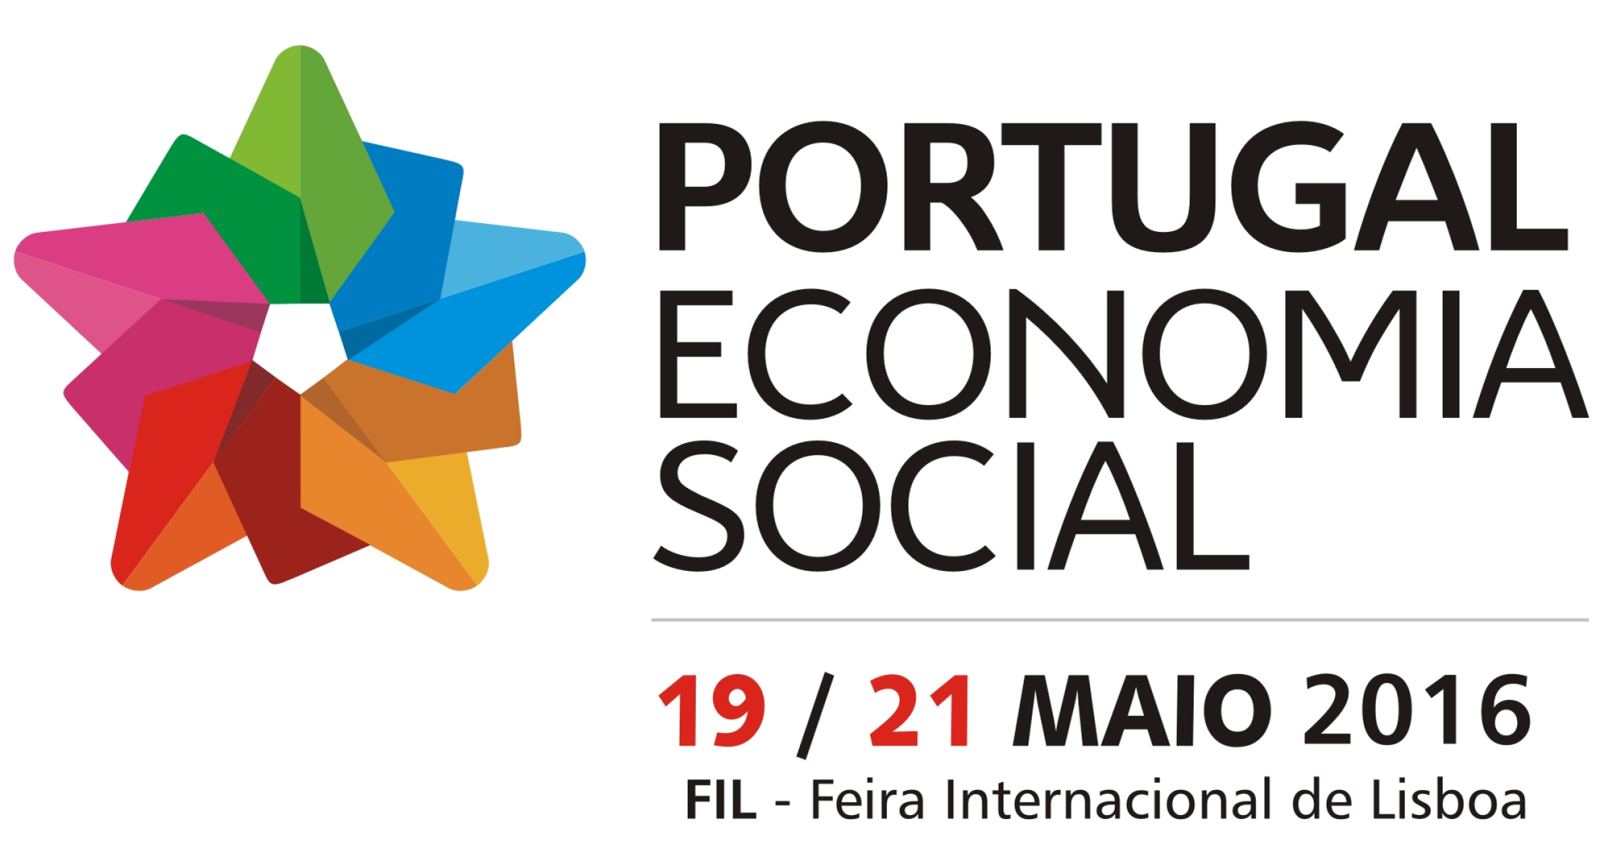 AIP | Entidades do setor organizam feira de economia social na FIL 